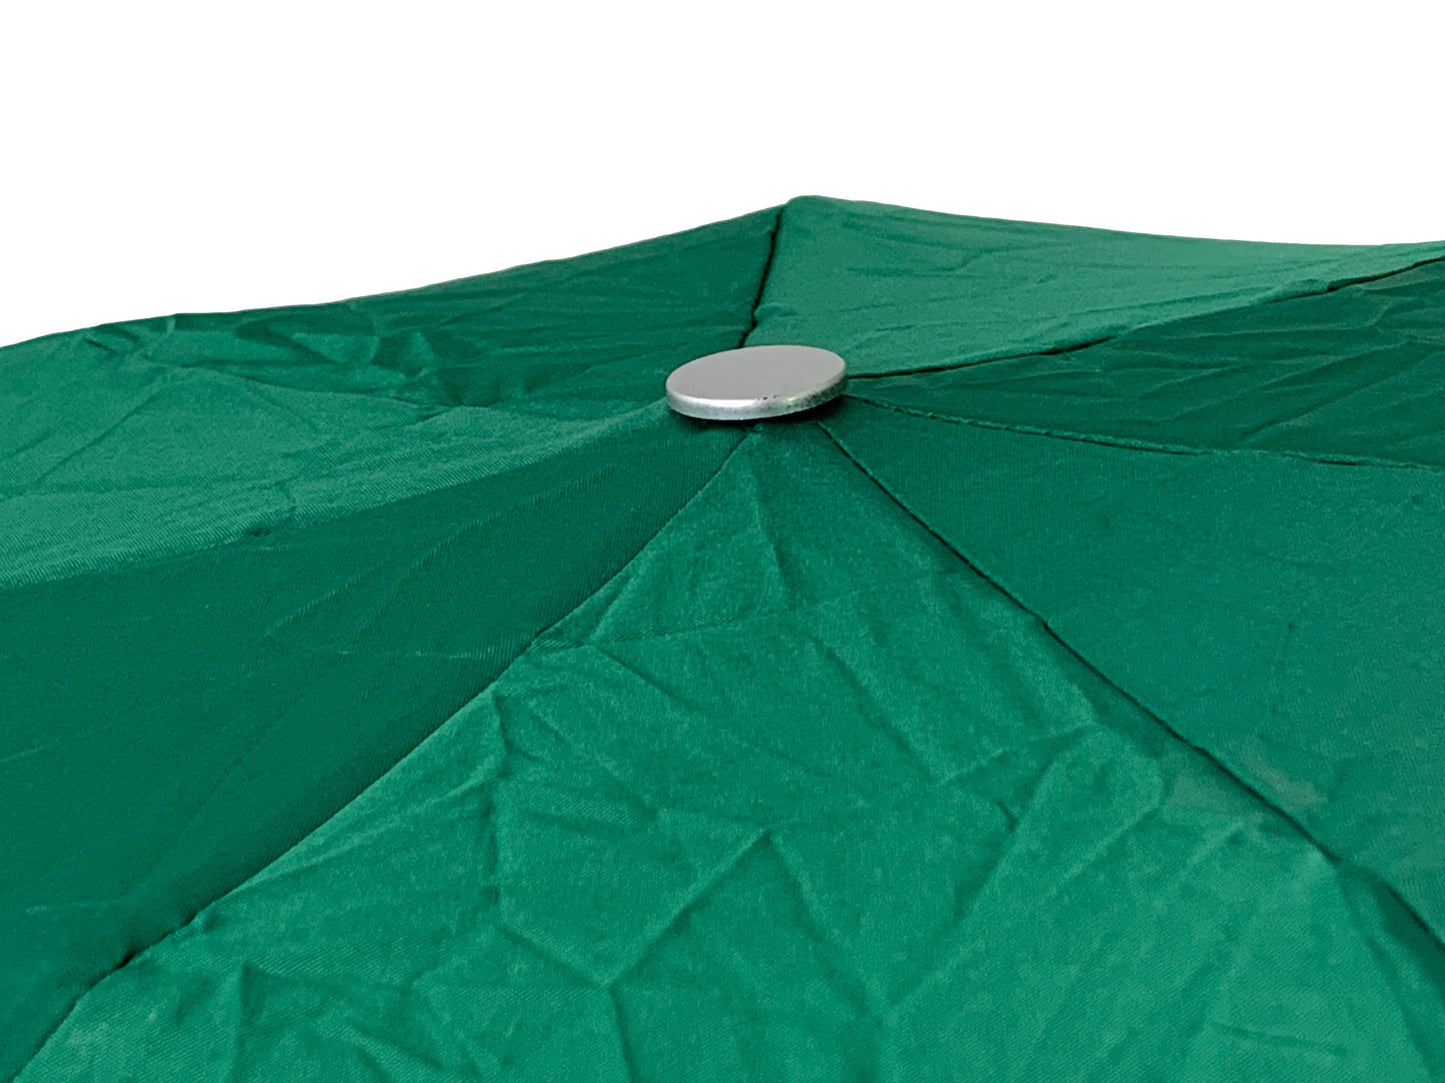 Πράσινο σκούρο ομπρέλα βροχής, έξτρα μίνι, με ειδική θήκη με φερμουάρ.